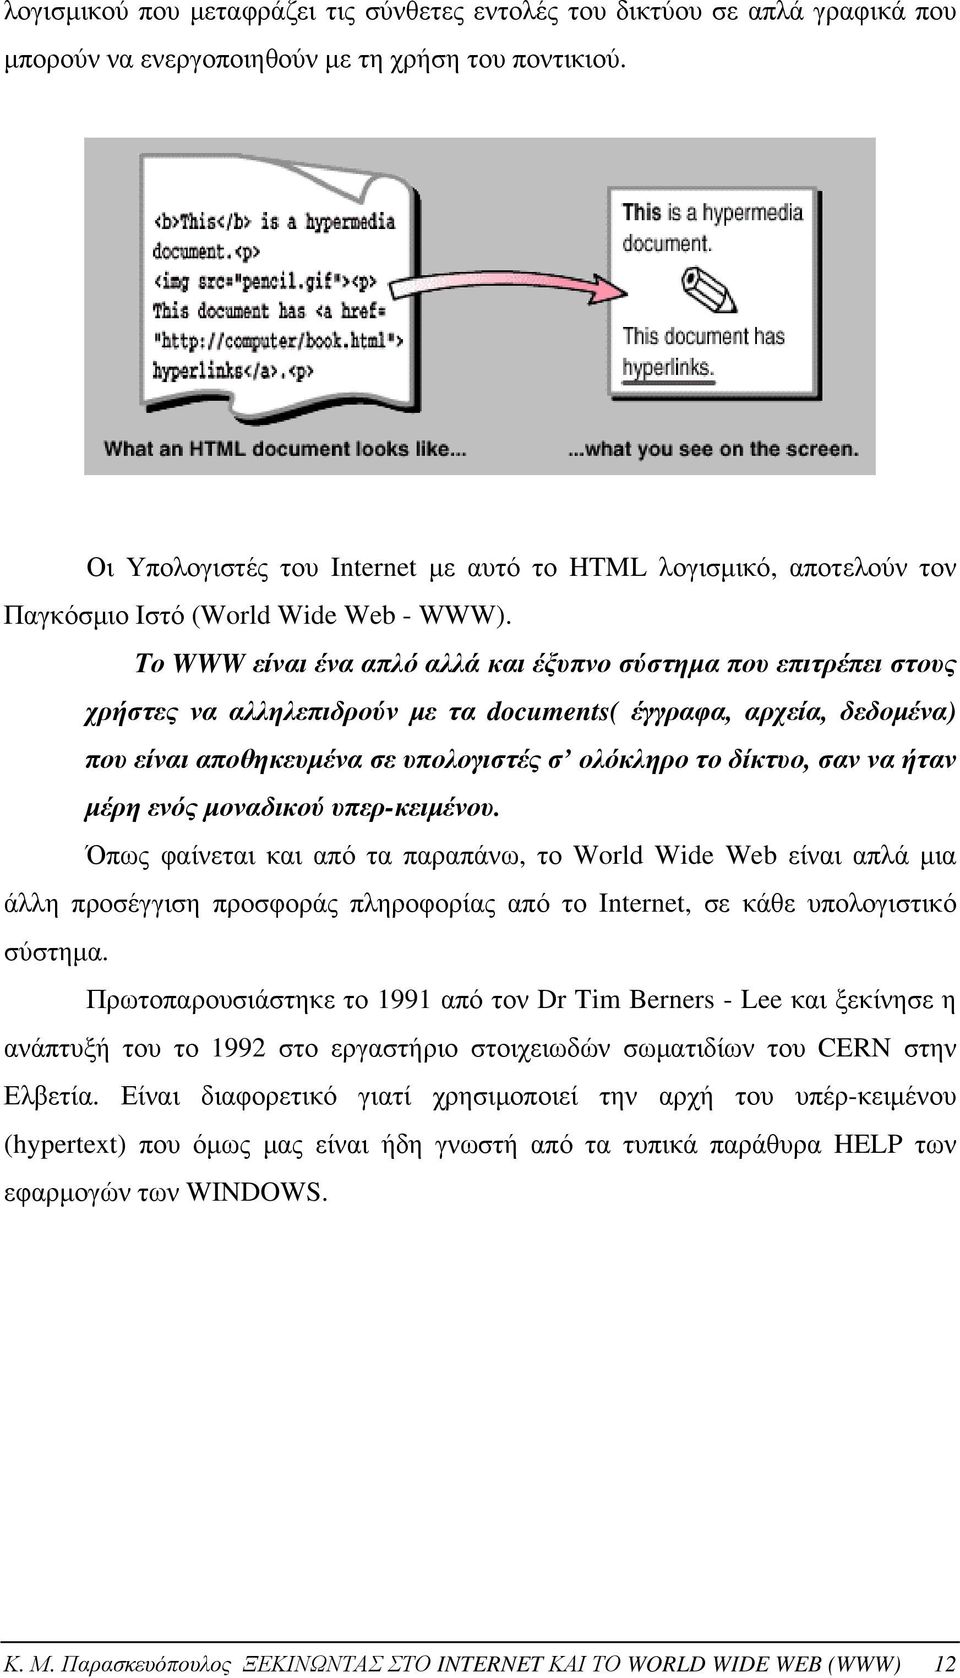 Το WWW είναι ένα απλό αλλά και έξυπνο σύστημα που επιτρέπει στους χρήστες να αλληλεπιδρούν με τα documents( έγγραφα, αρχεία, δεδομένα) που είναι αποθηκευμένα σε υπολογιστές σ ολόκληρο το δίκτυο, σαν